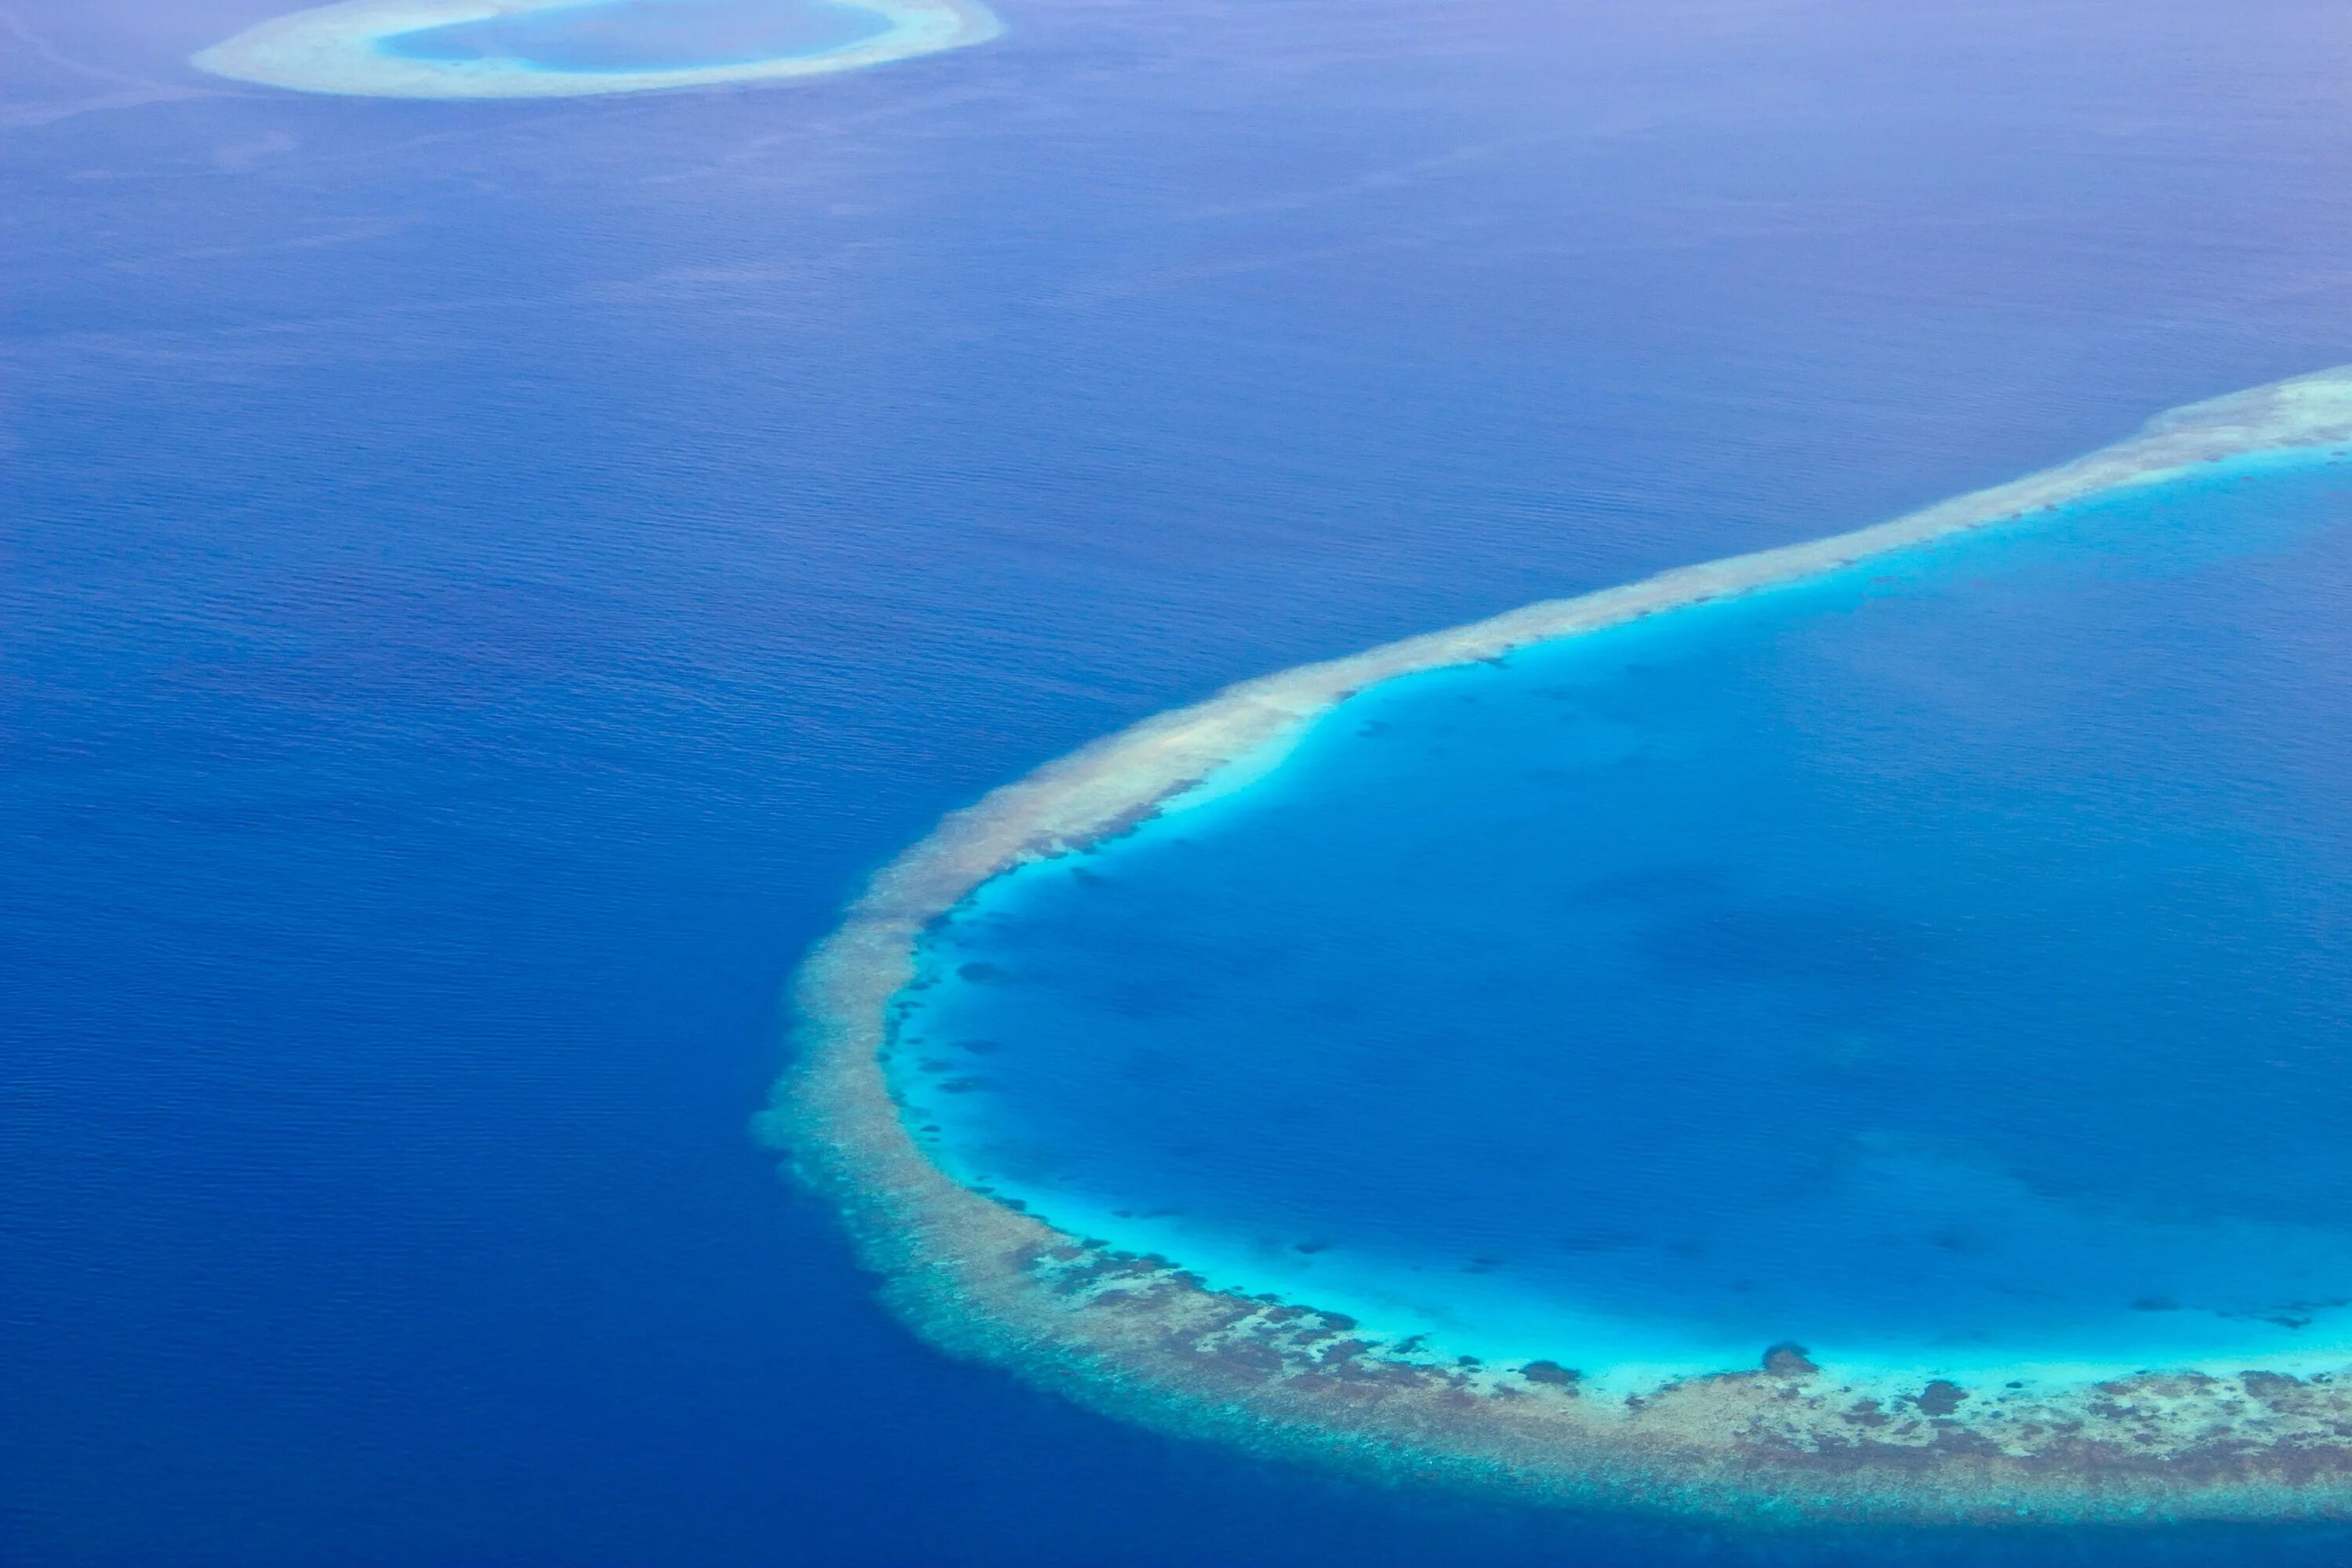 Мальдивы Лагуна риф. Лагуна Атолл риф. Мальдивы голубая Лагуна. Мальдивы Тодду голубая Лагуна. Океан омывающий мальдивы